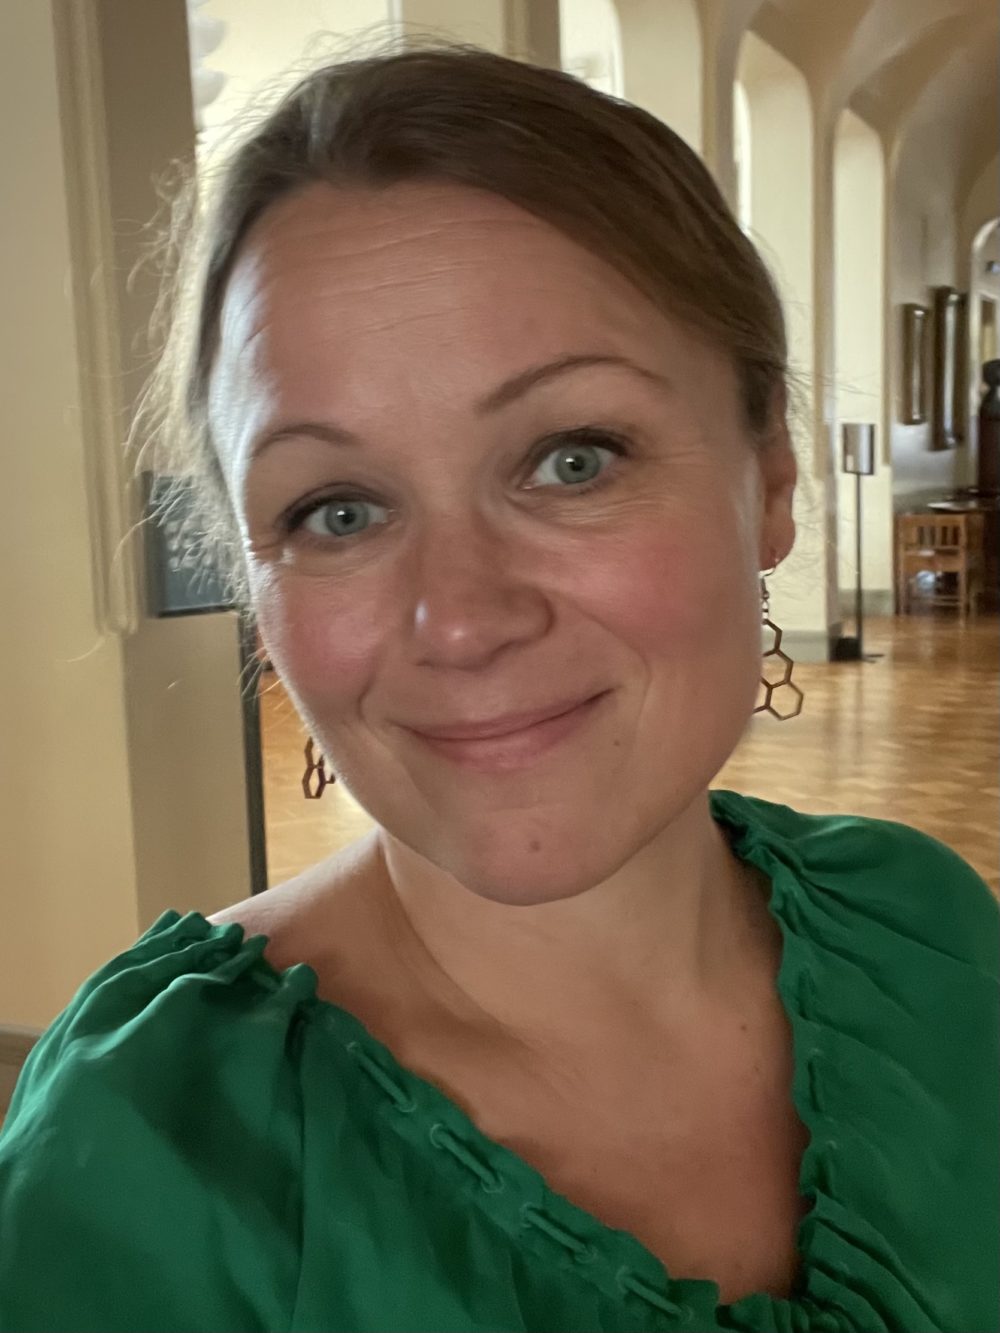 Suomen Kansallisteatterin myynti- ja markkinointipäällikkö Marika Agarth katsoo kameraan kansallisteatterin lämpiössä vihreä pusero päällään.